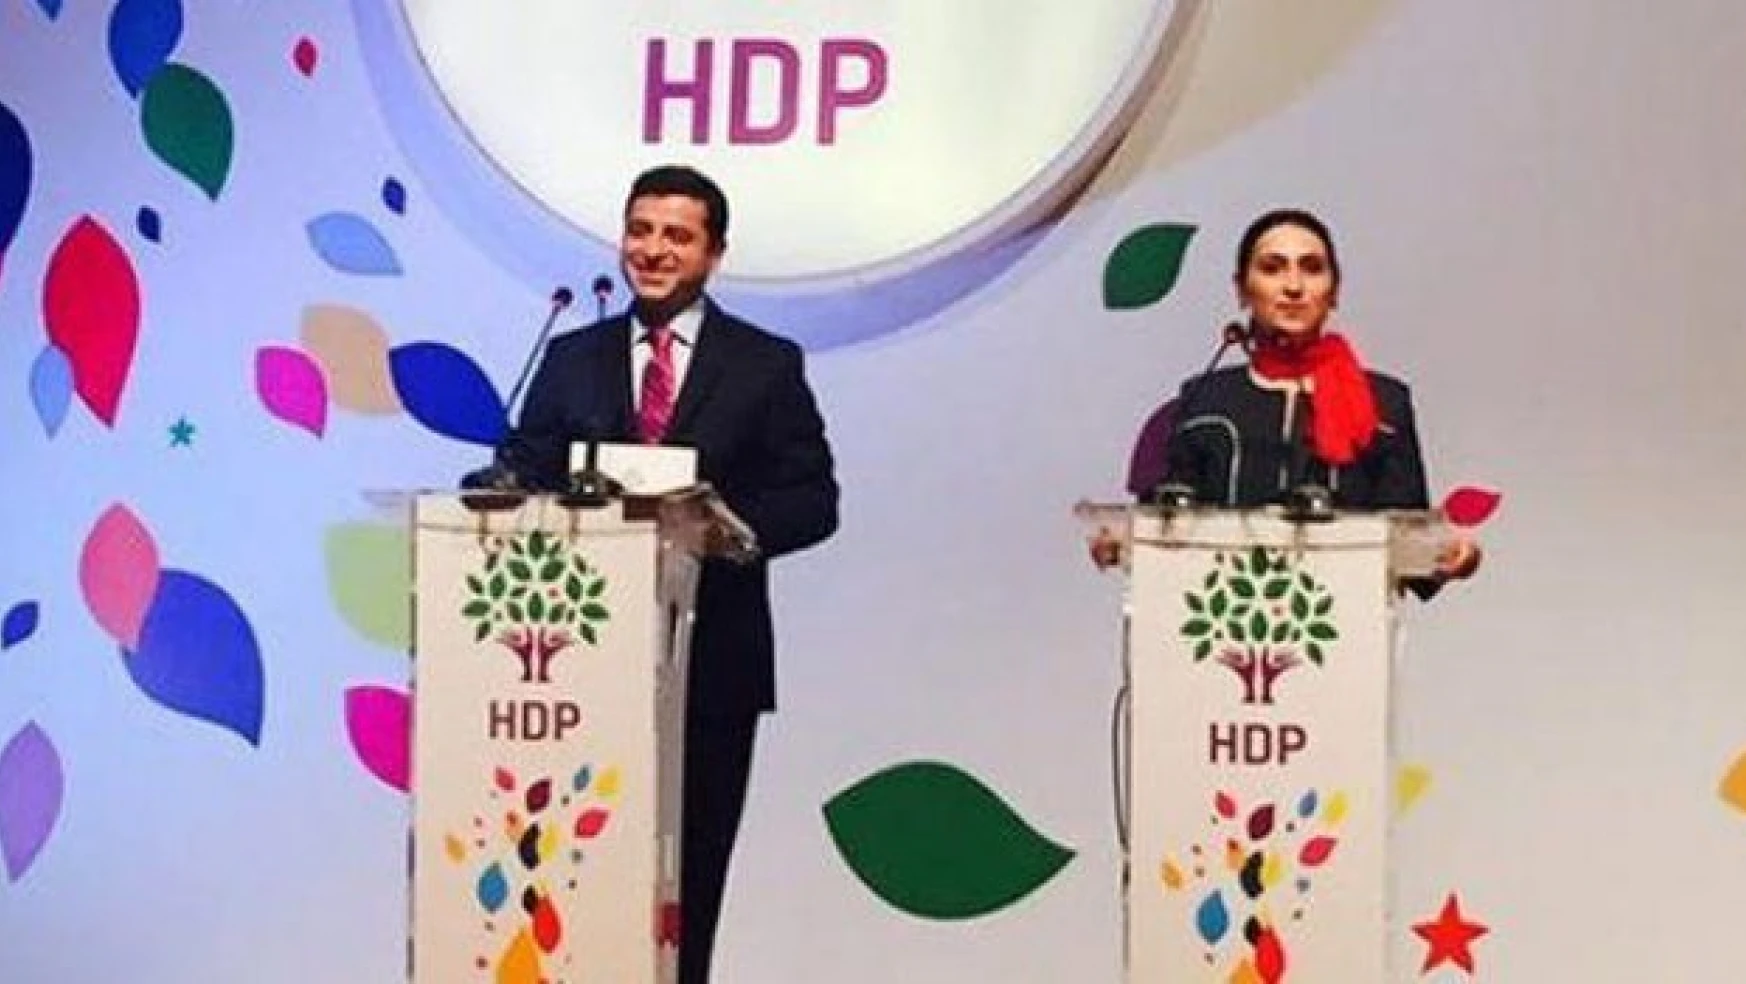 İşte HDP'nin seçim bildirgesi